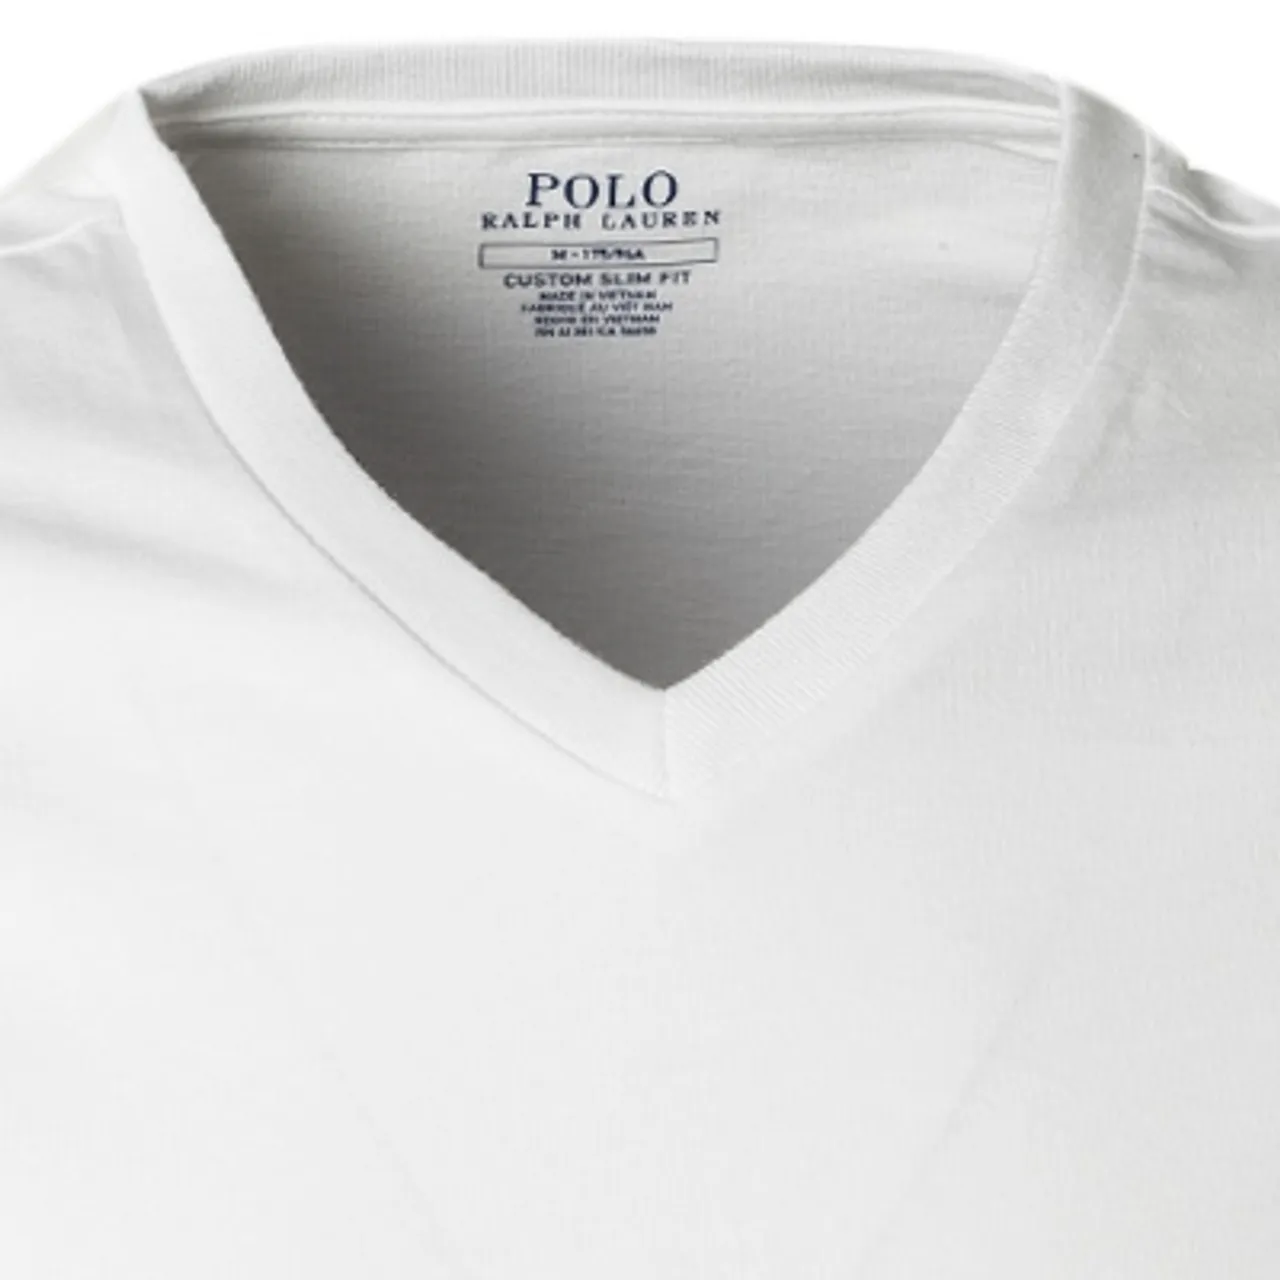 Polo Ralph Lauren Herren T-Shirt weiß Baumwolle Slim Fit